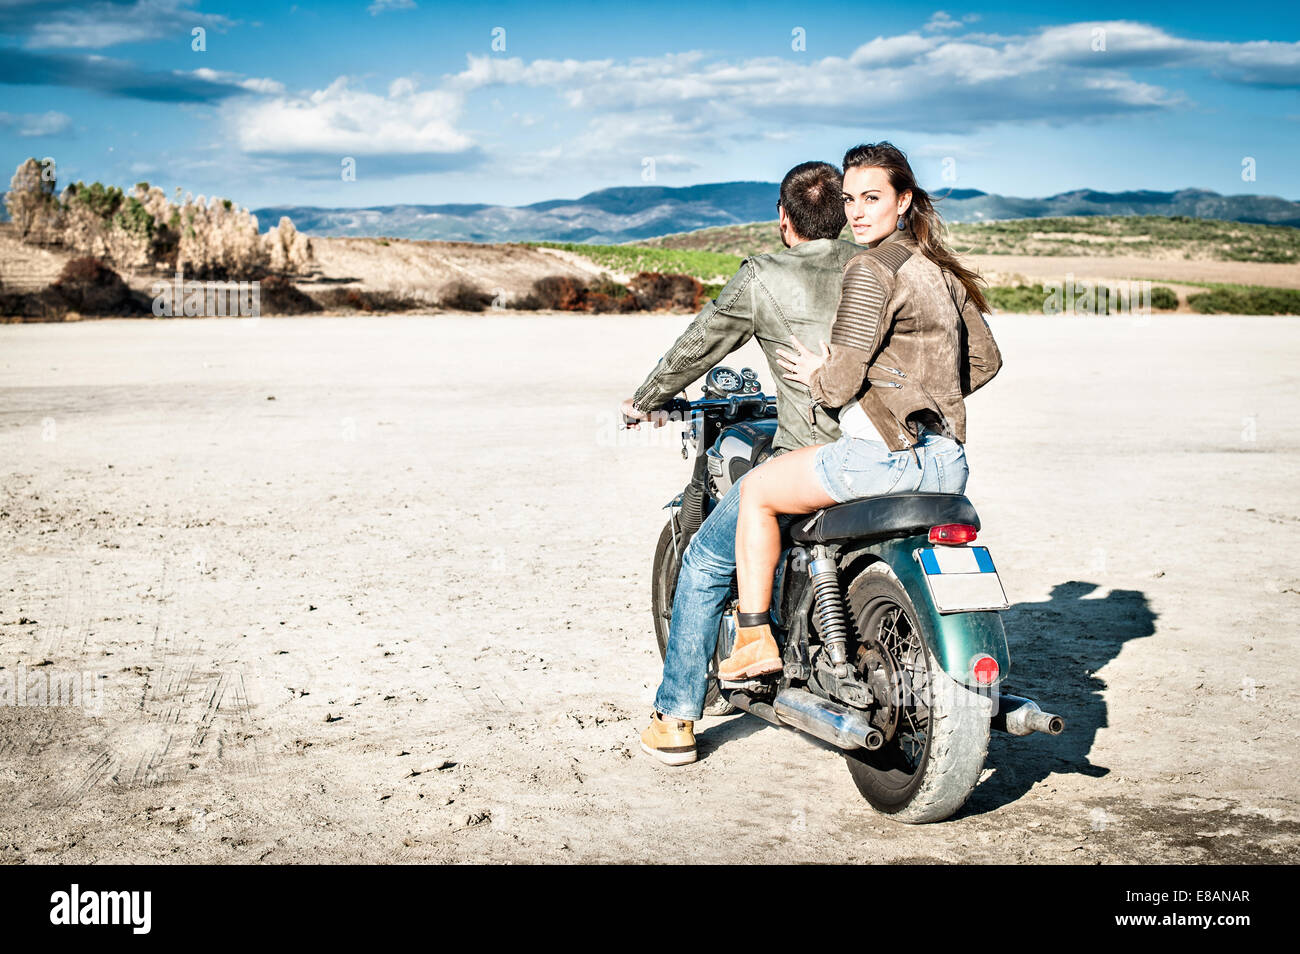 Vue arrière du jeune couple riding sur plaine aride, Cagliari, Sardaigne, Italie Banque D'Images